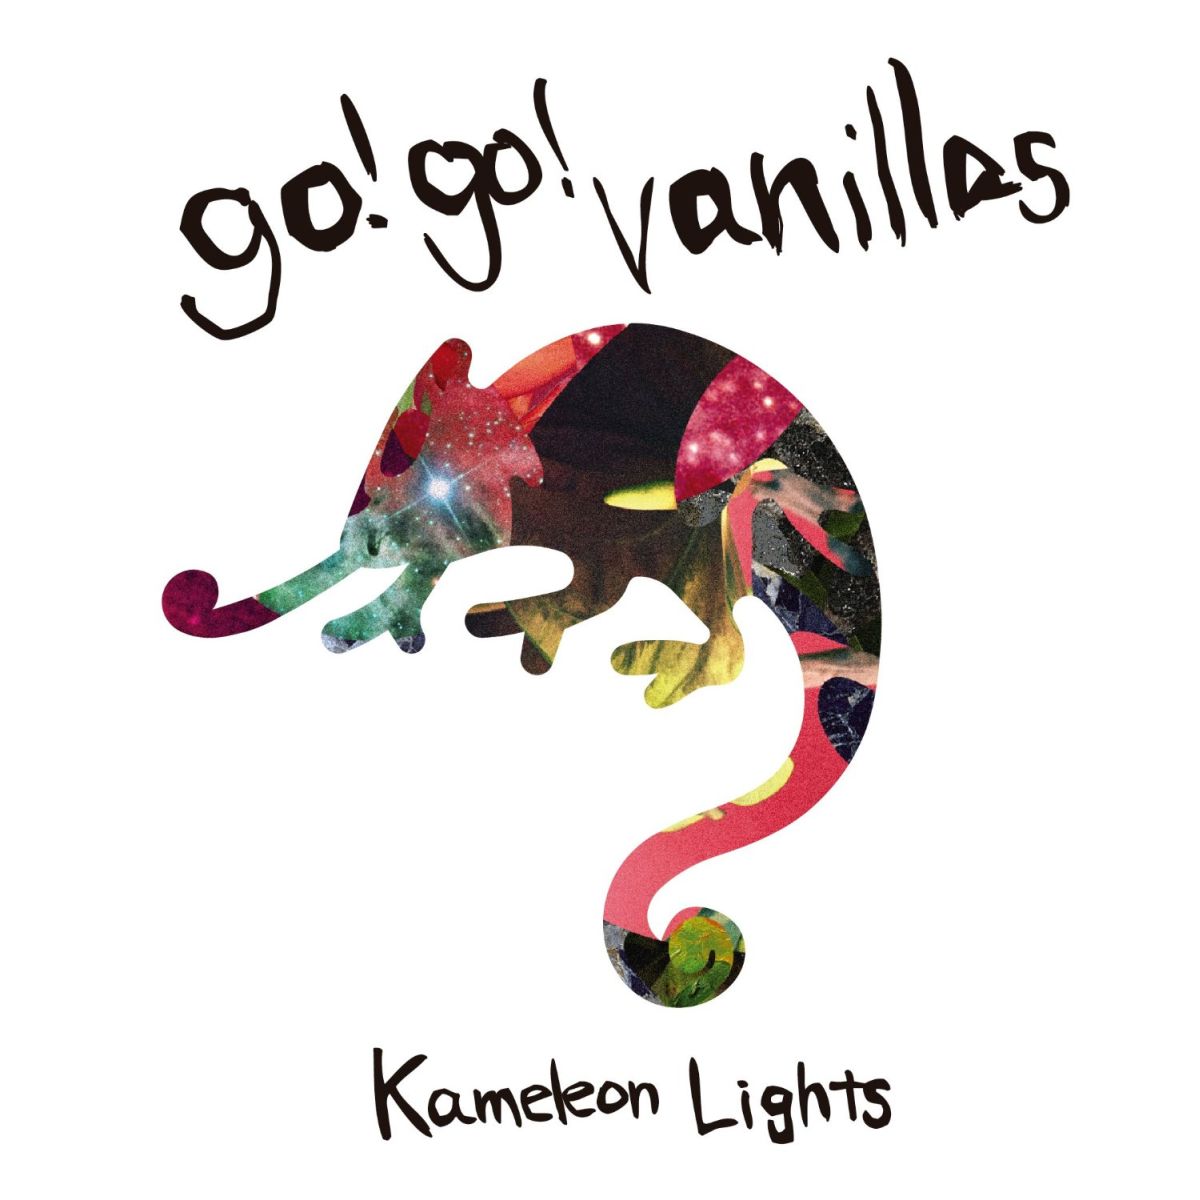 楽天ブックス: Kameleon Lights (初回限定盤 CD＋DVD) - go!go